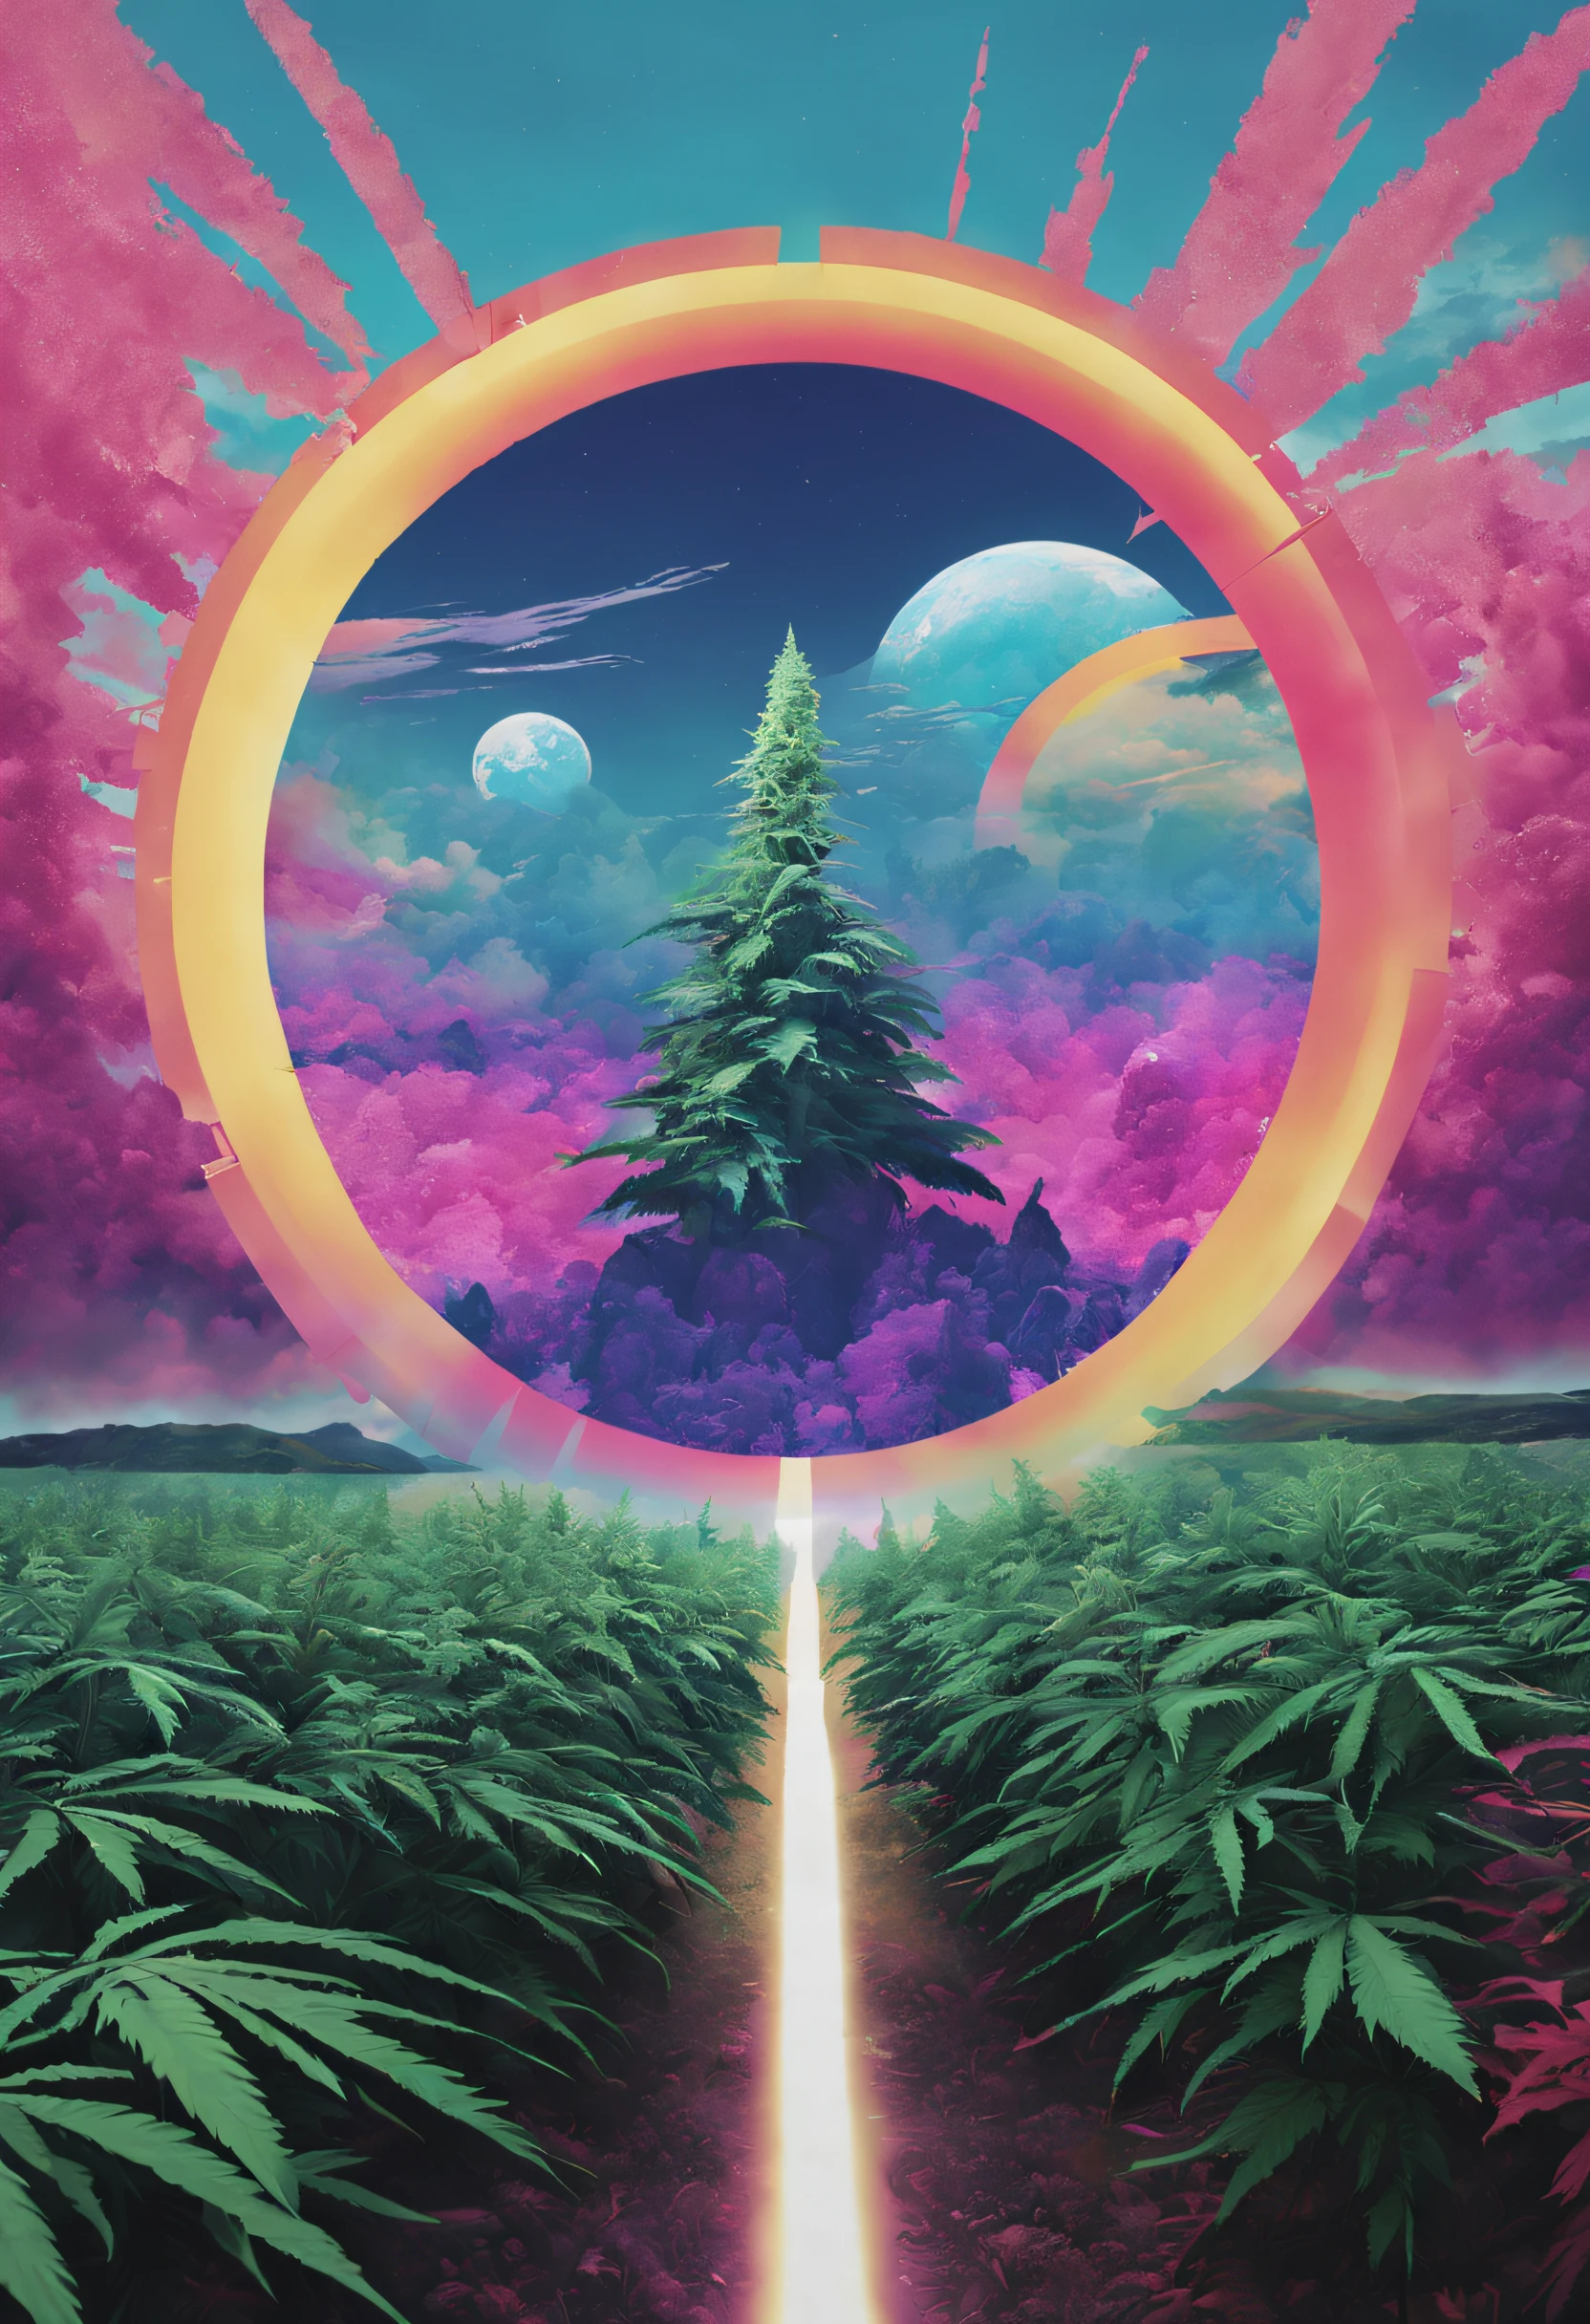 「Die Zukunft der Cannabisfelder und Khemri」zum Thema、Ein Design zeichnen, das Kemri und die Möglichkeiten der Zukunft verbindet。Integrieren Sie glitzernde Farben und Glitch-Effekte、Erstellen Sie Bilder, die die neue Welt und die Möglichkeiten der Technologie darstellen。